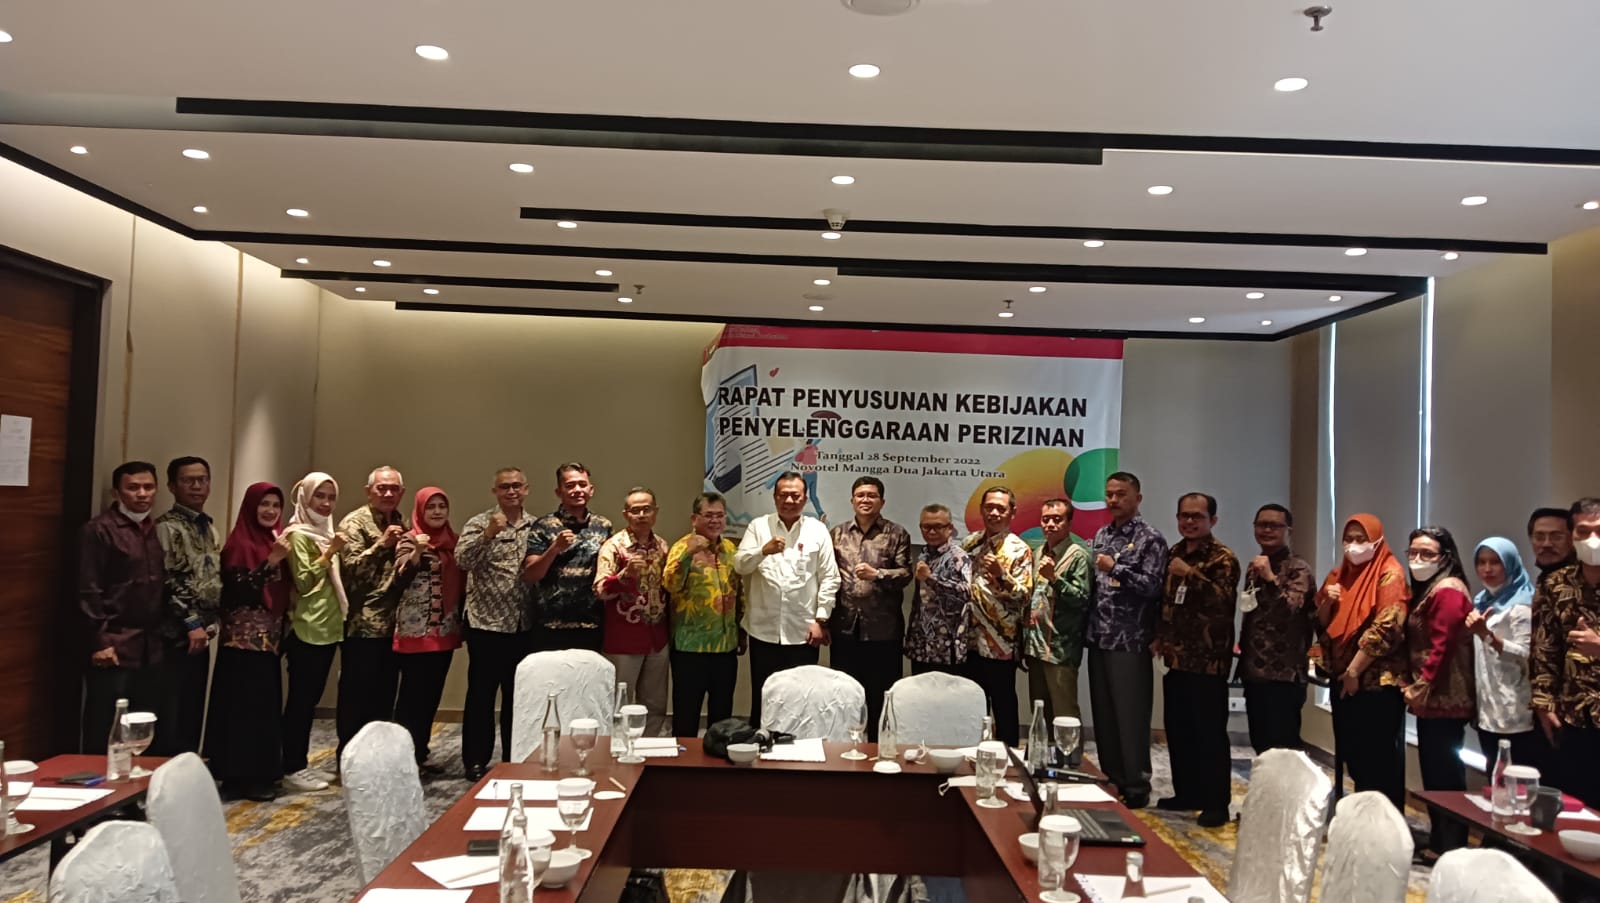 Rabu, (28/09/2022) DPMPTSP mengikuti Kegiatan Rapat Penyusunan Kebijakan Penyelenggaraan Perizinan dari KEMENDAGRI